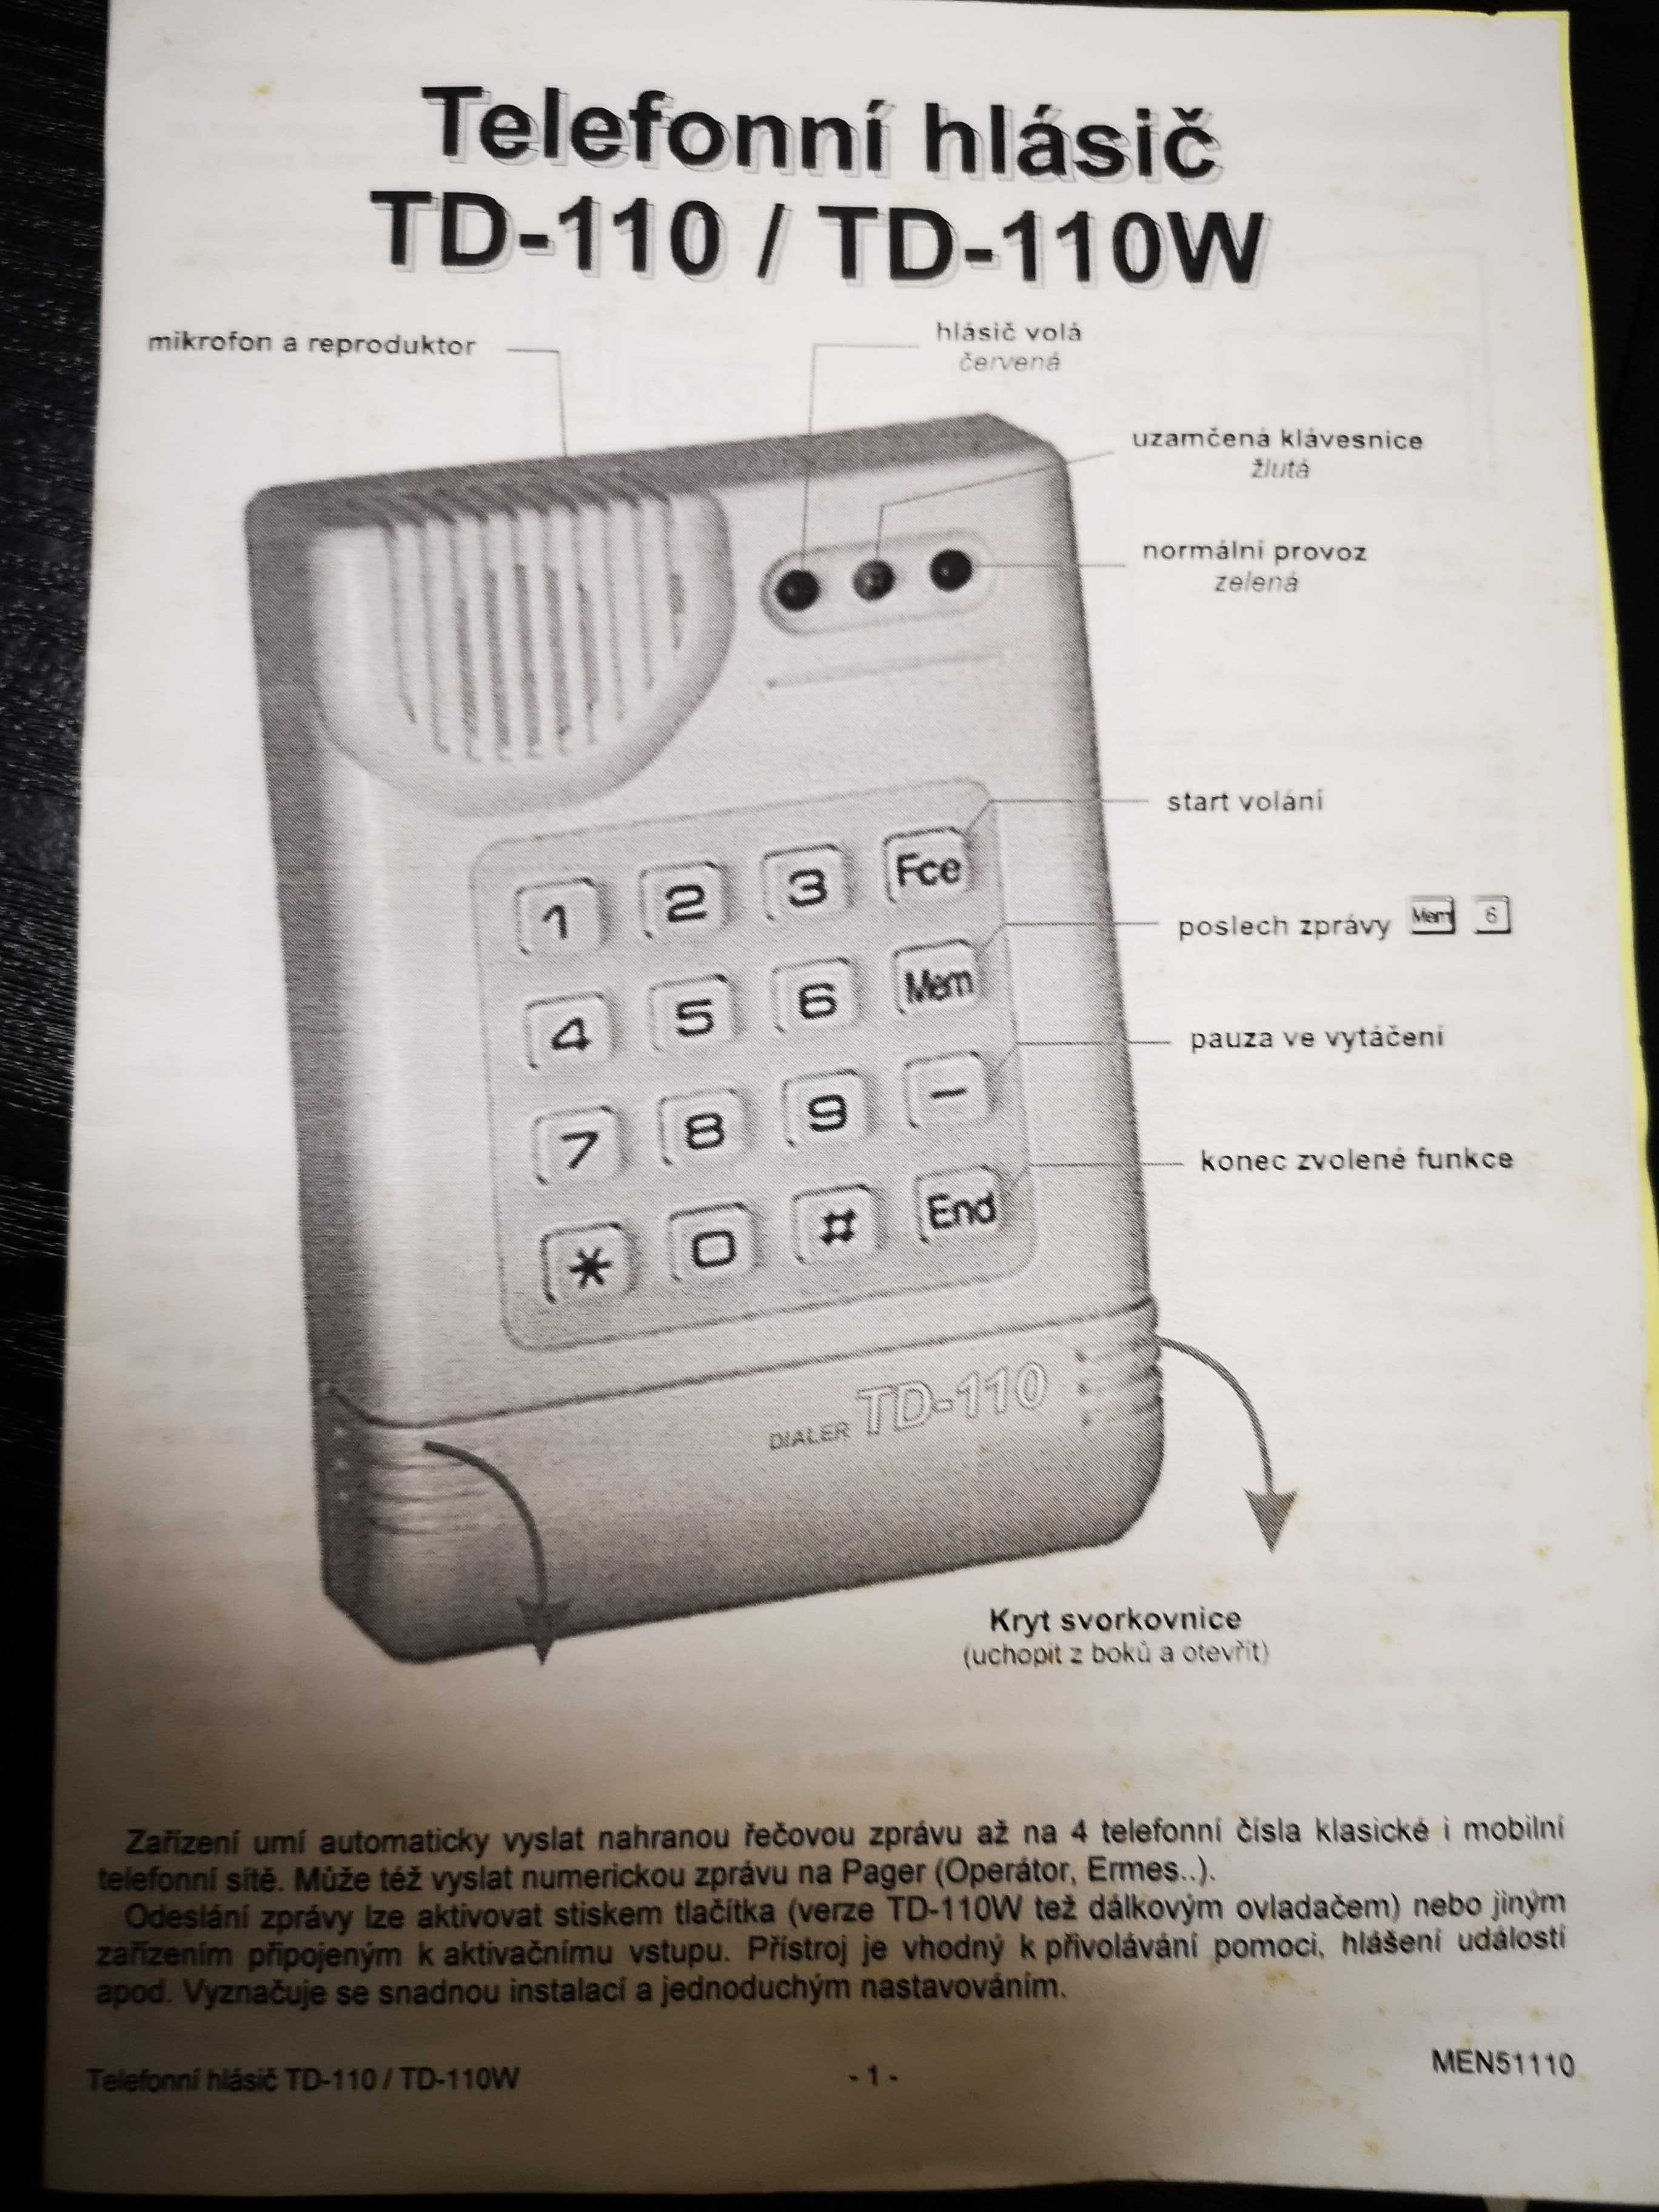 Автоматический телефонный диалер JABLOTRON TD-110